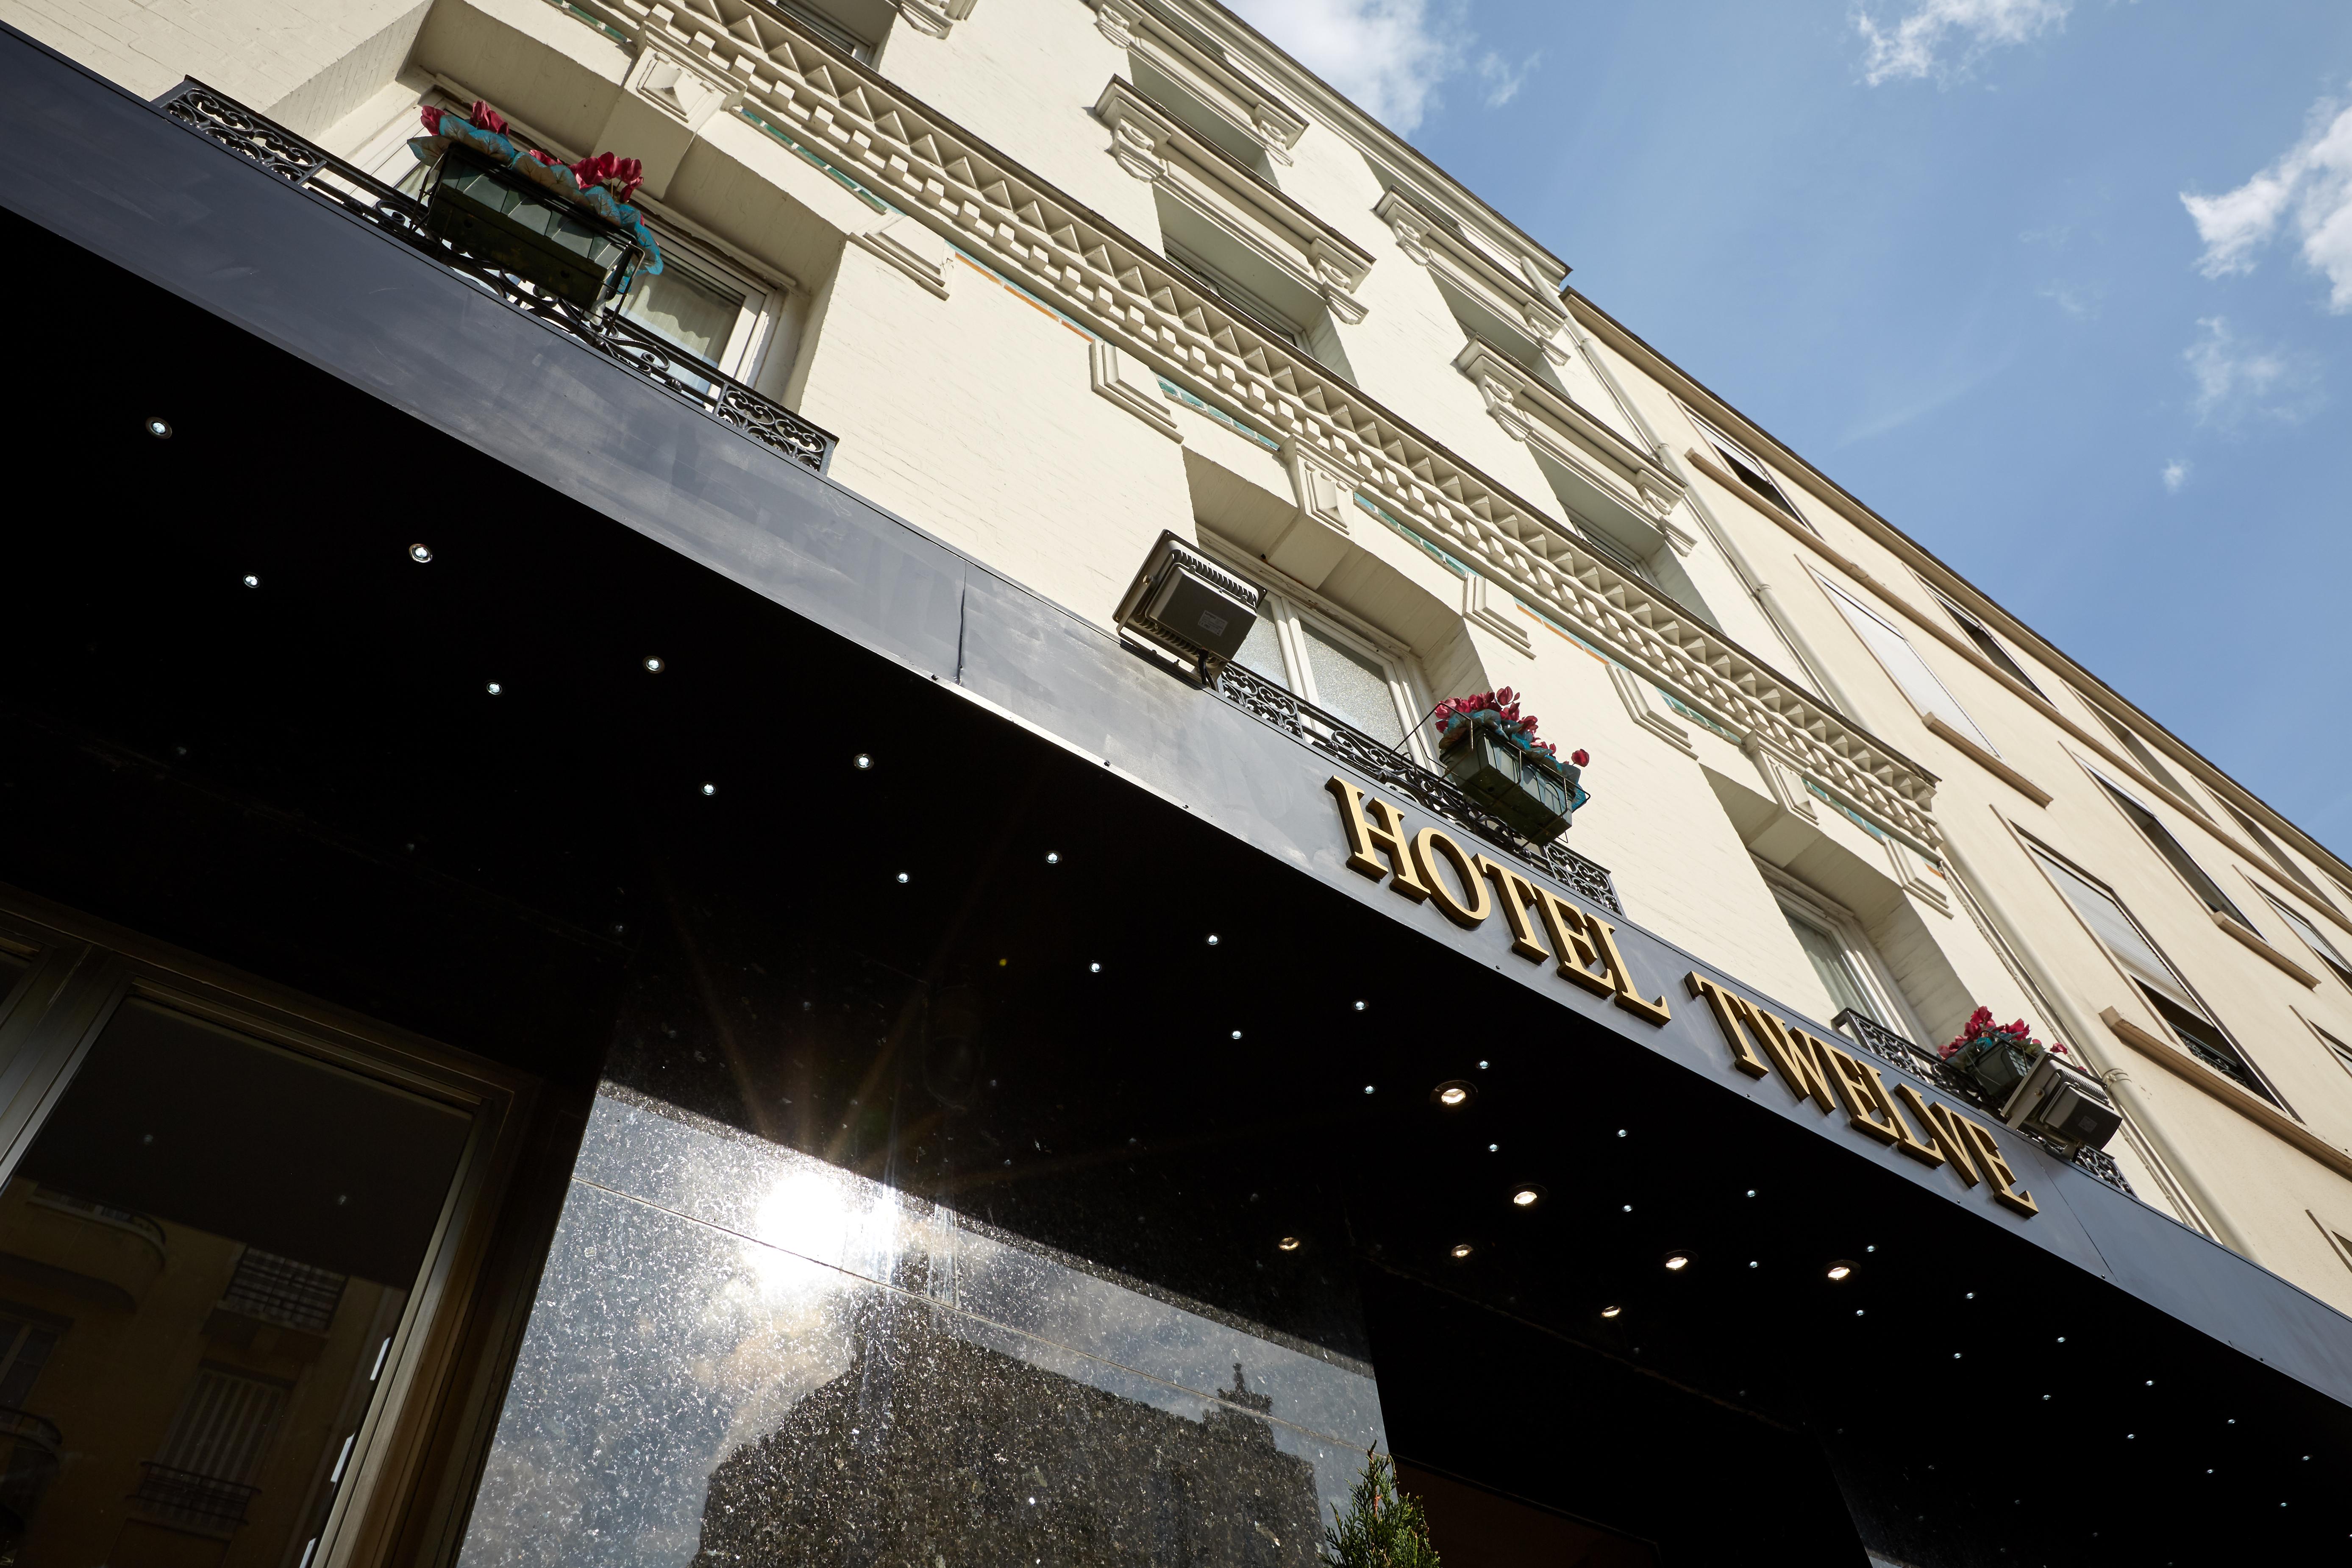 Hotel Le Twelve Paris Exterior photo